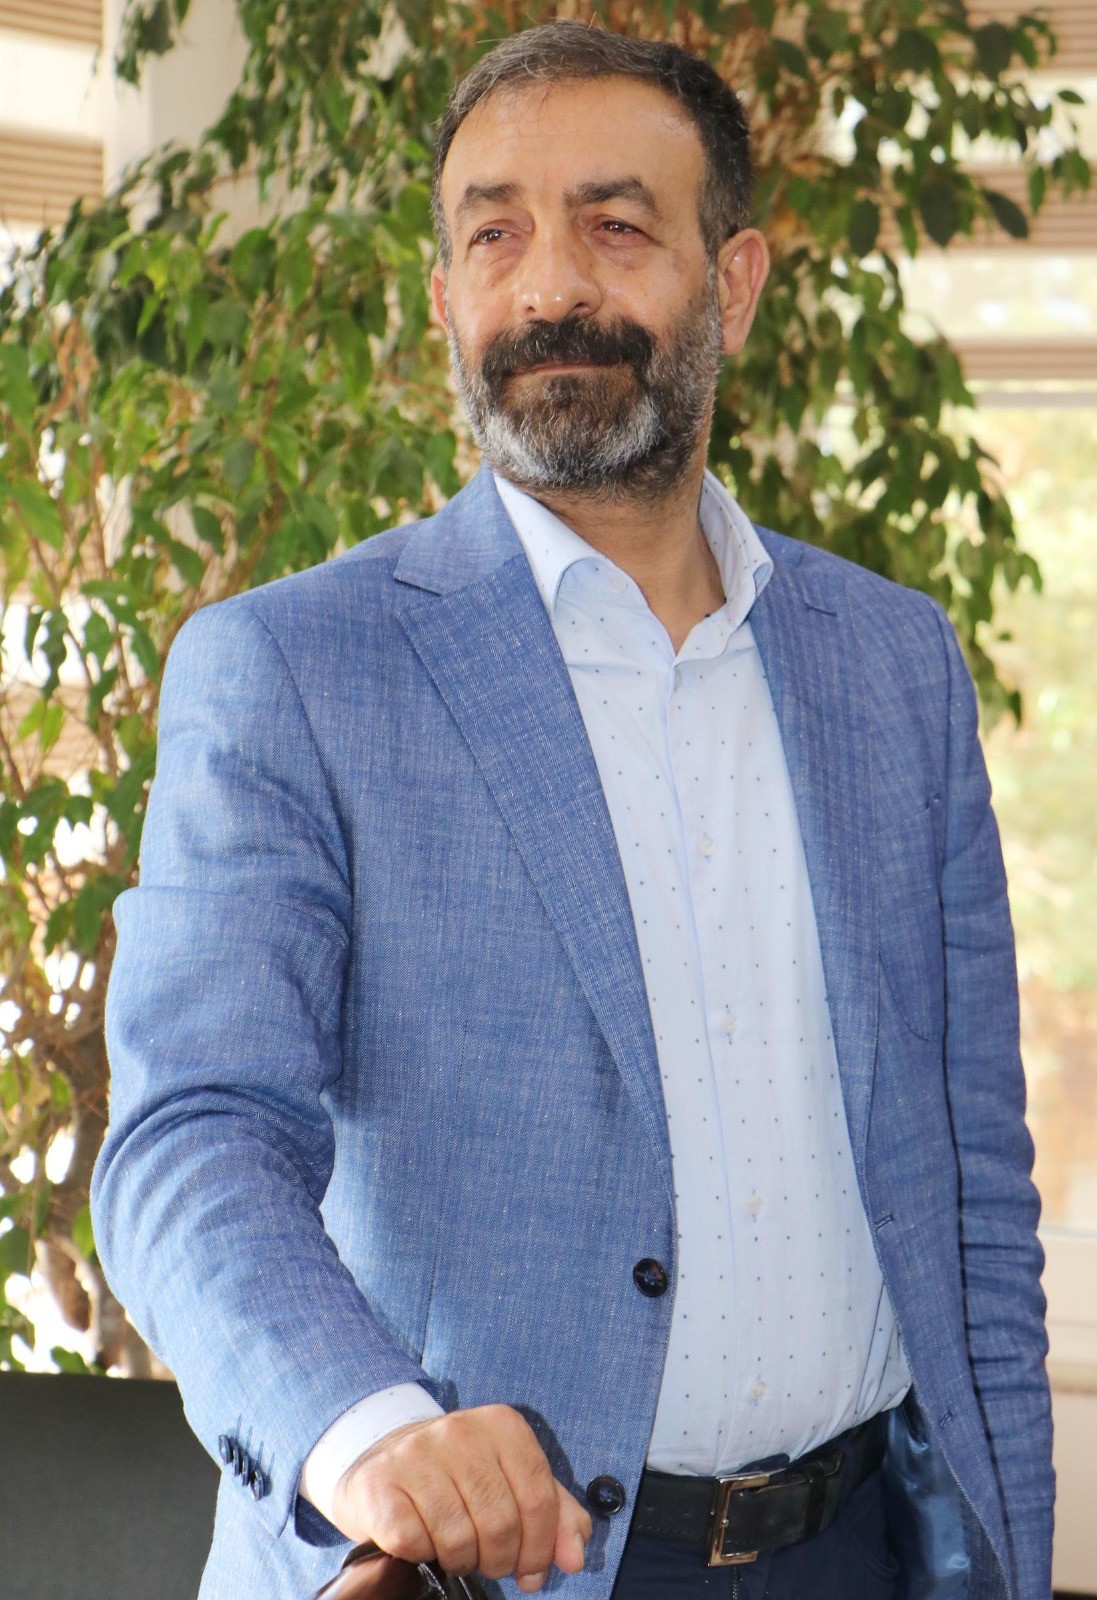 Göğebakan: Galatasaray modeli vakıf okulu açacağız